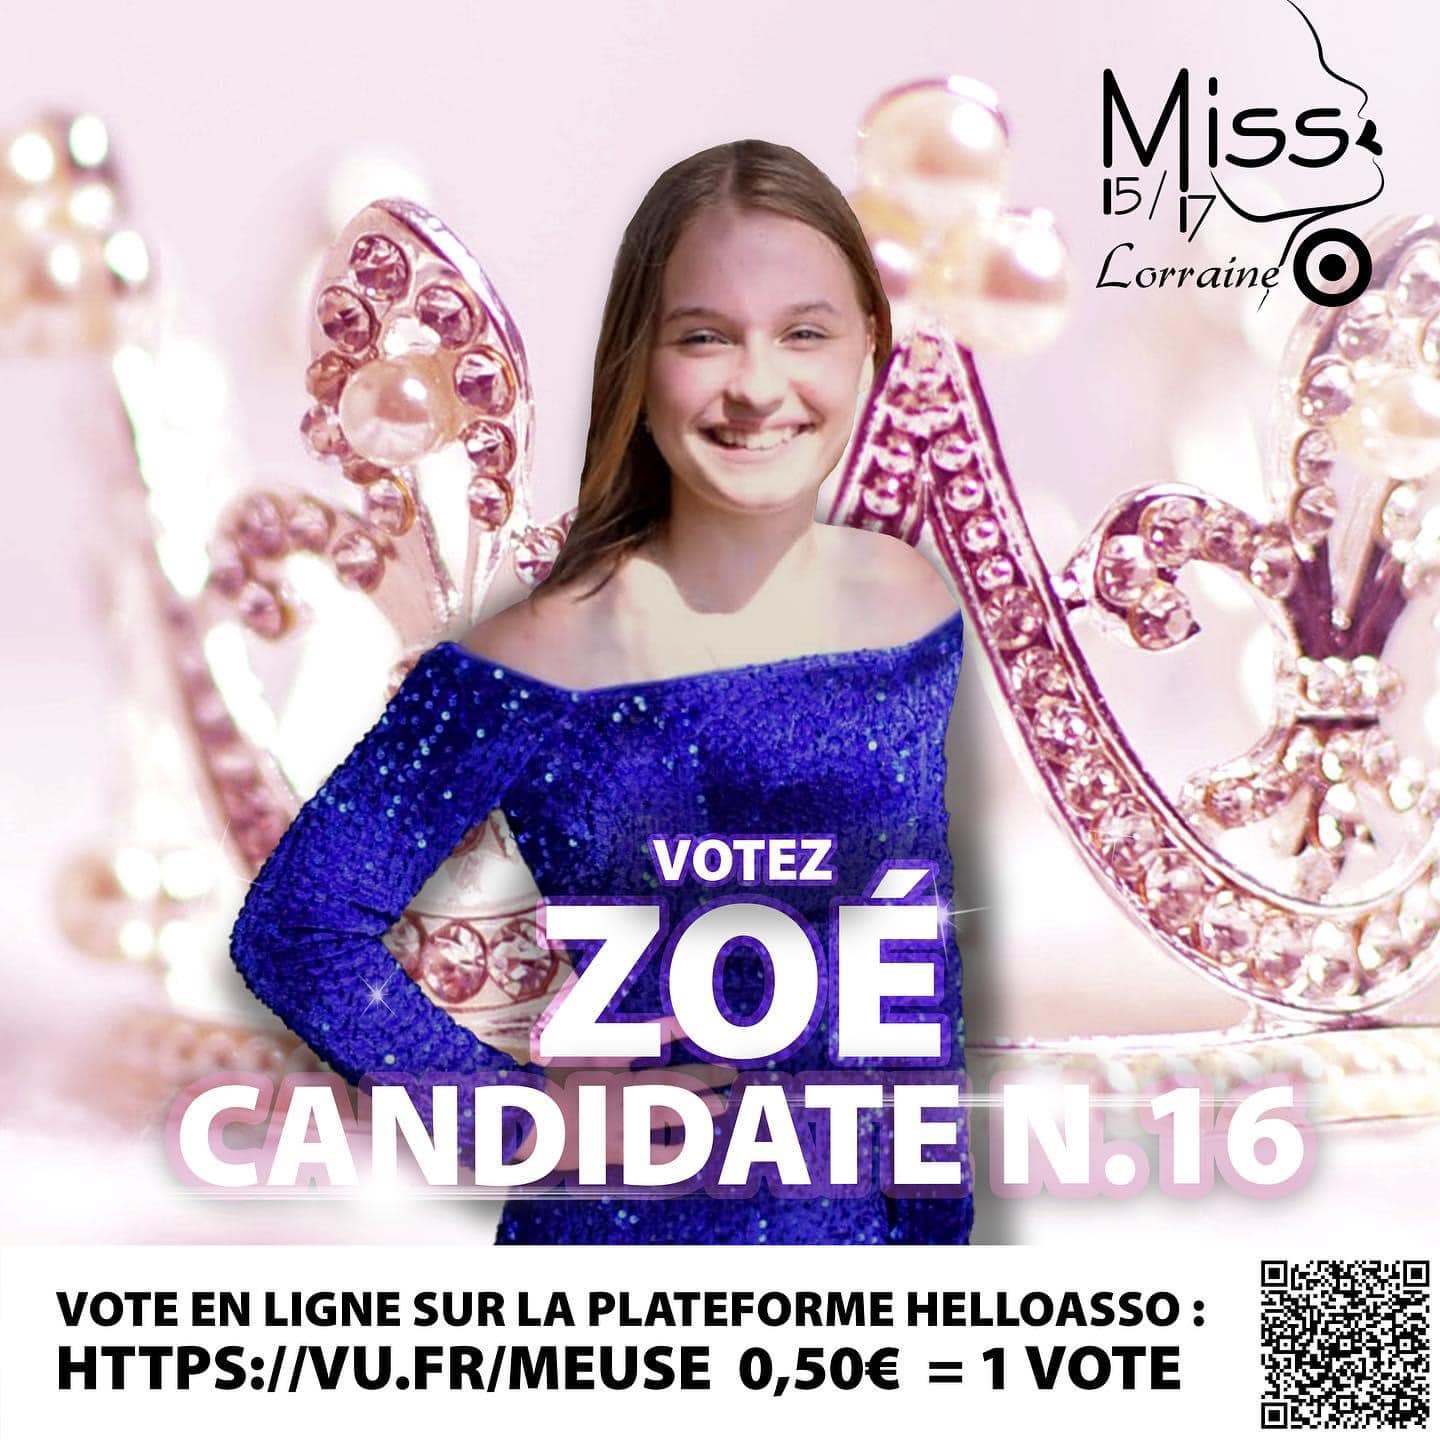 Candidates_Vosgiennes_Miss_15-17_Lorraine (7)